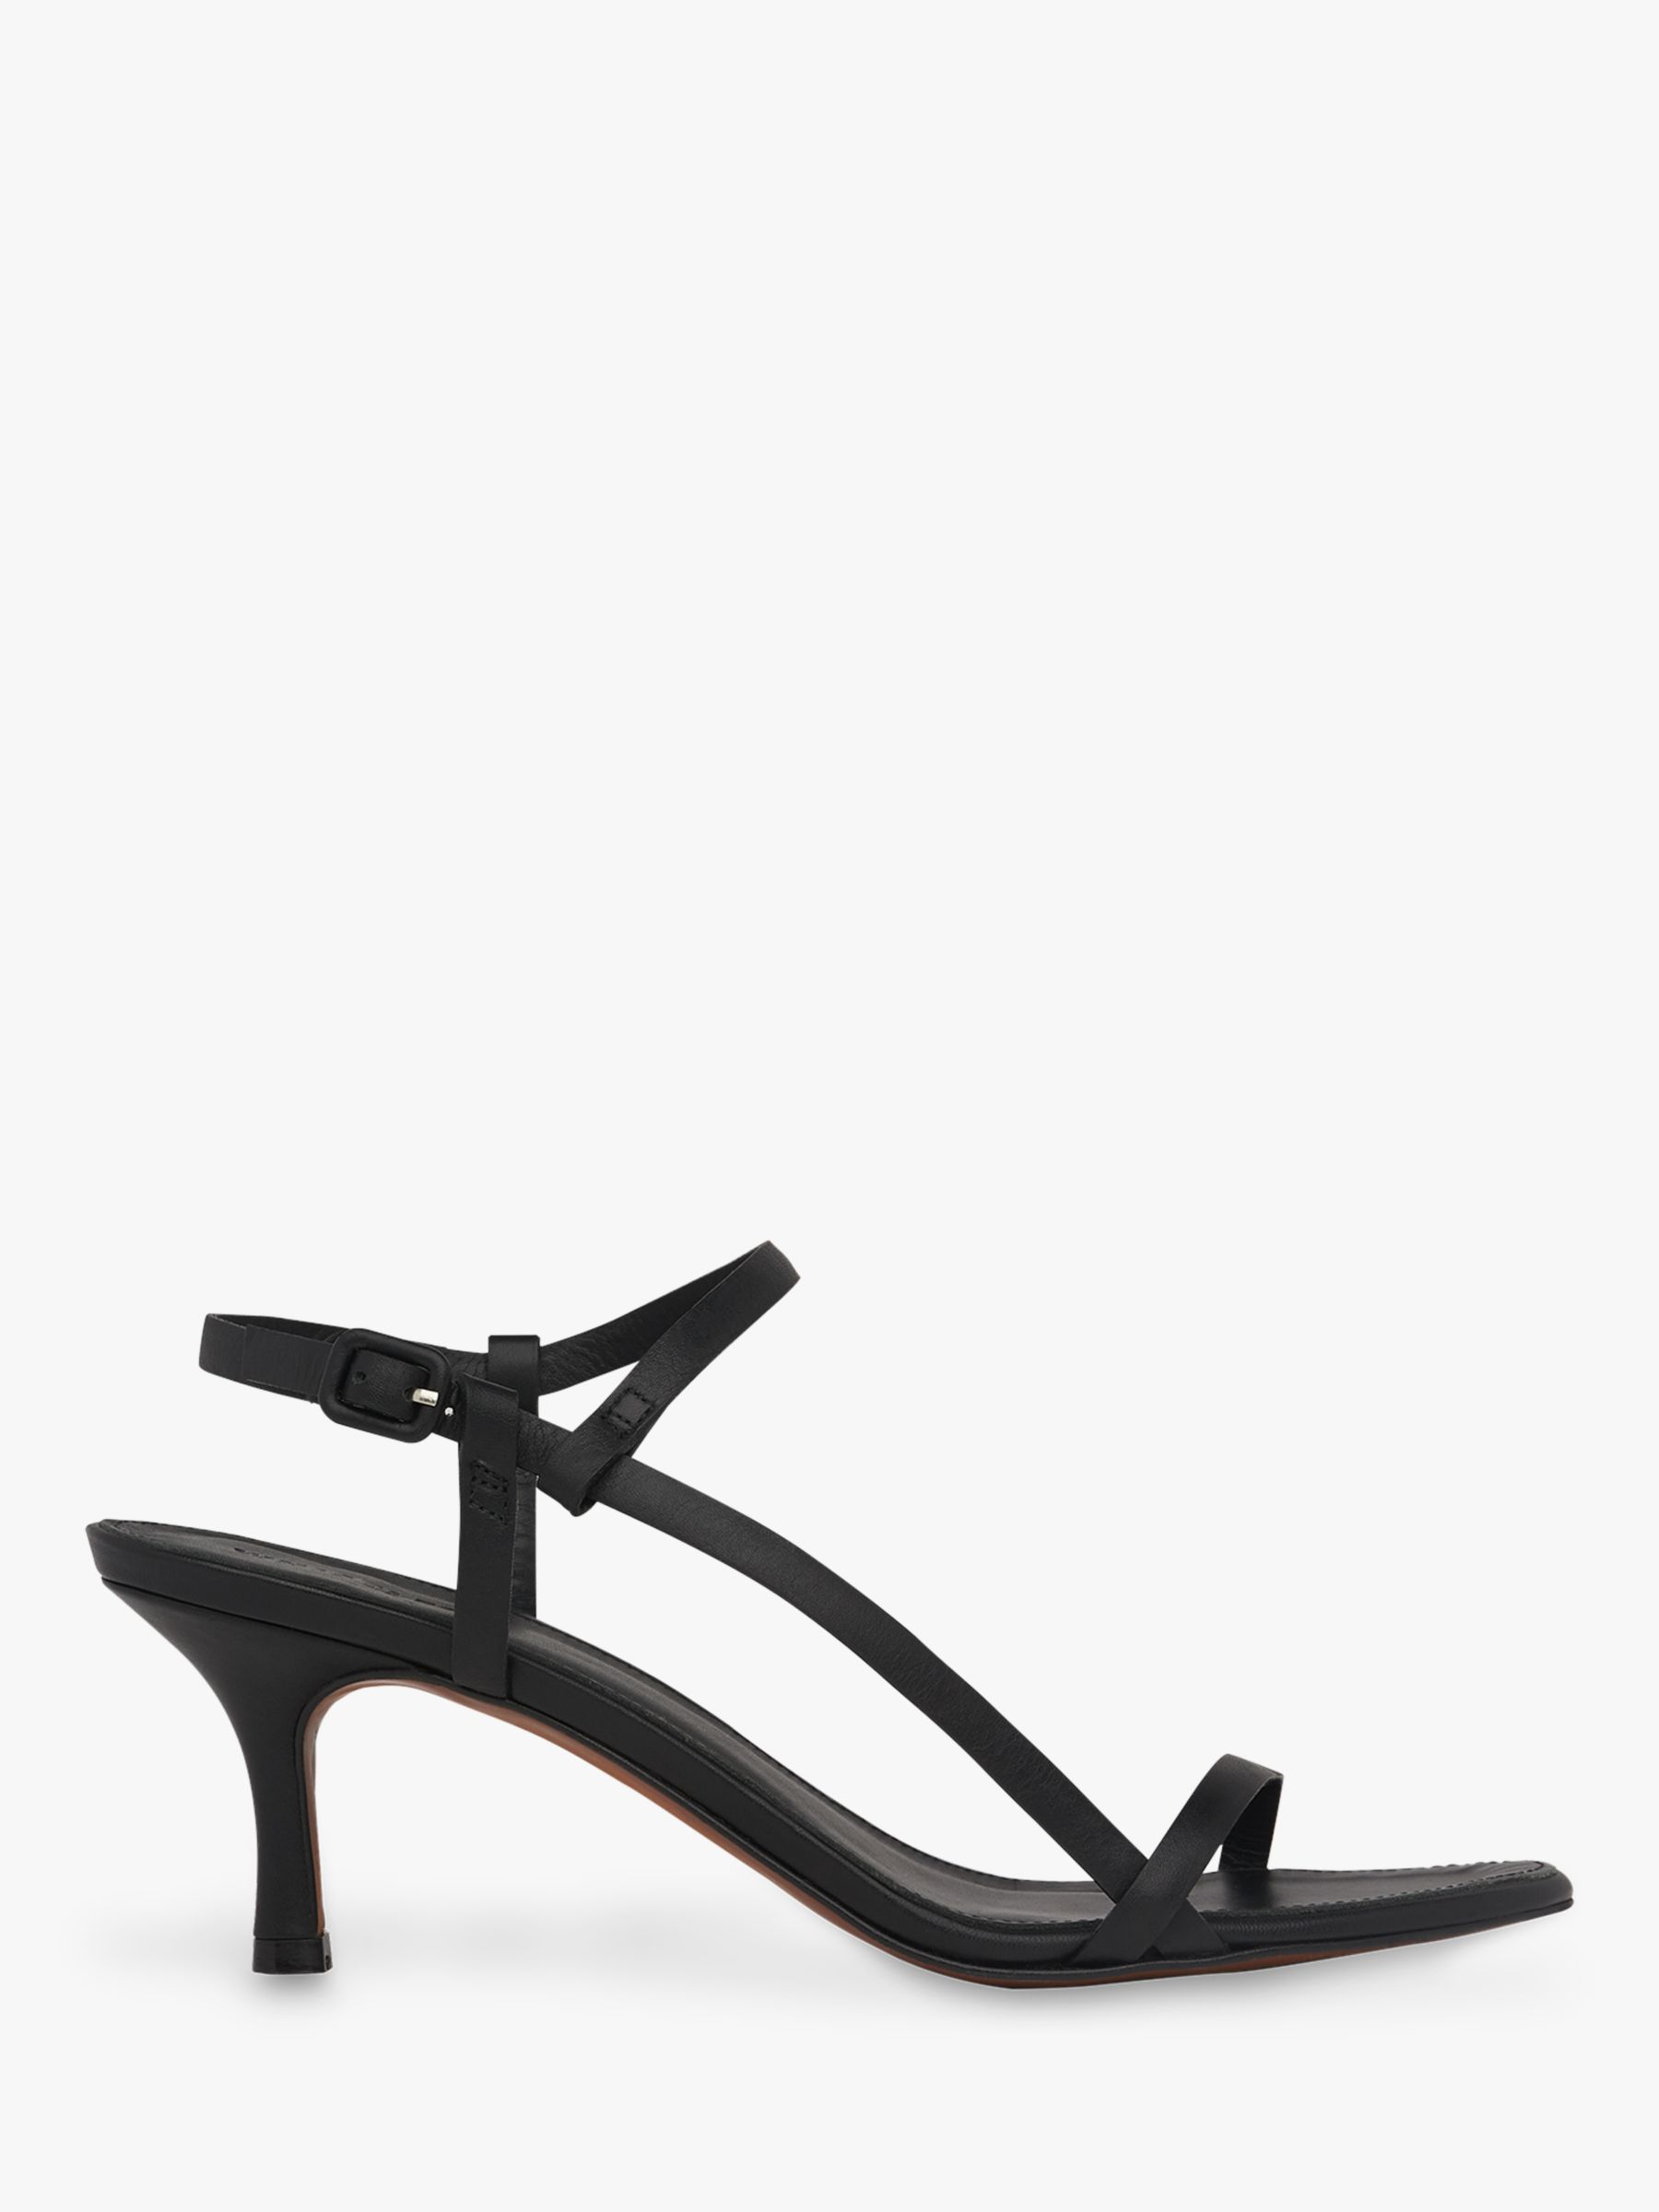 Whistles Milana Asymmetric Sandals, Black